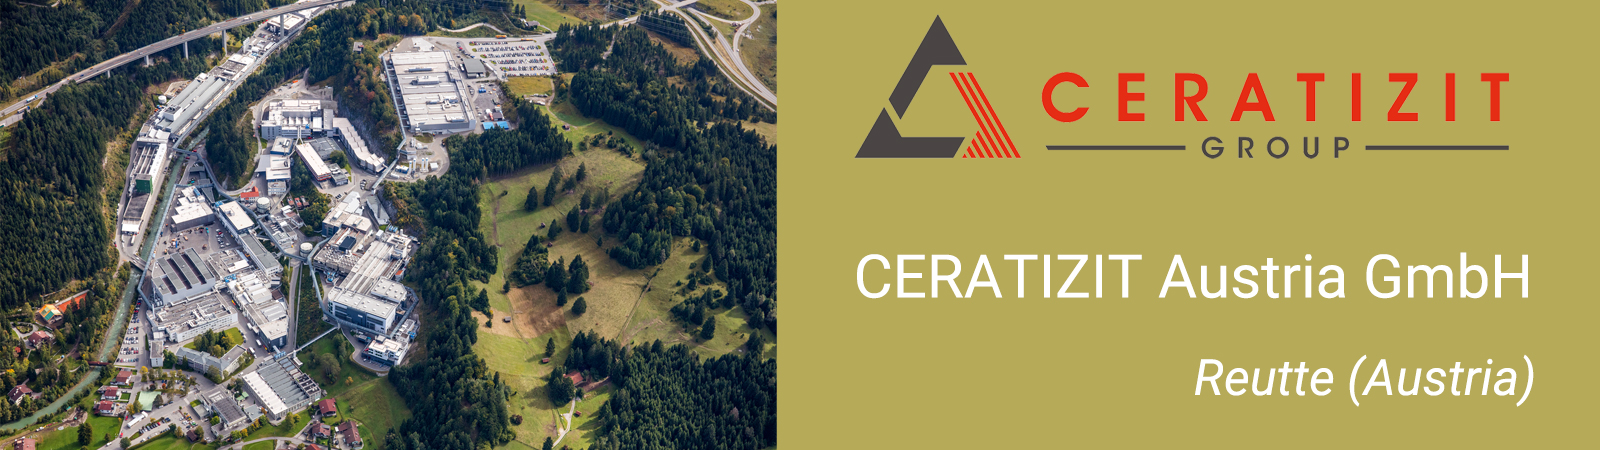 CERATIZIT Austria GmbH adotta la prima pressa e-MP di SACMI